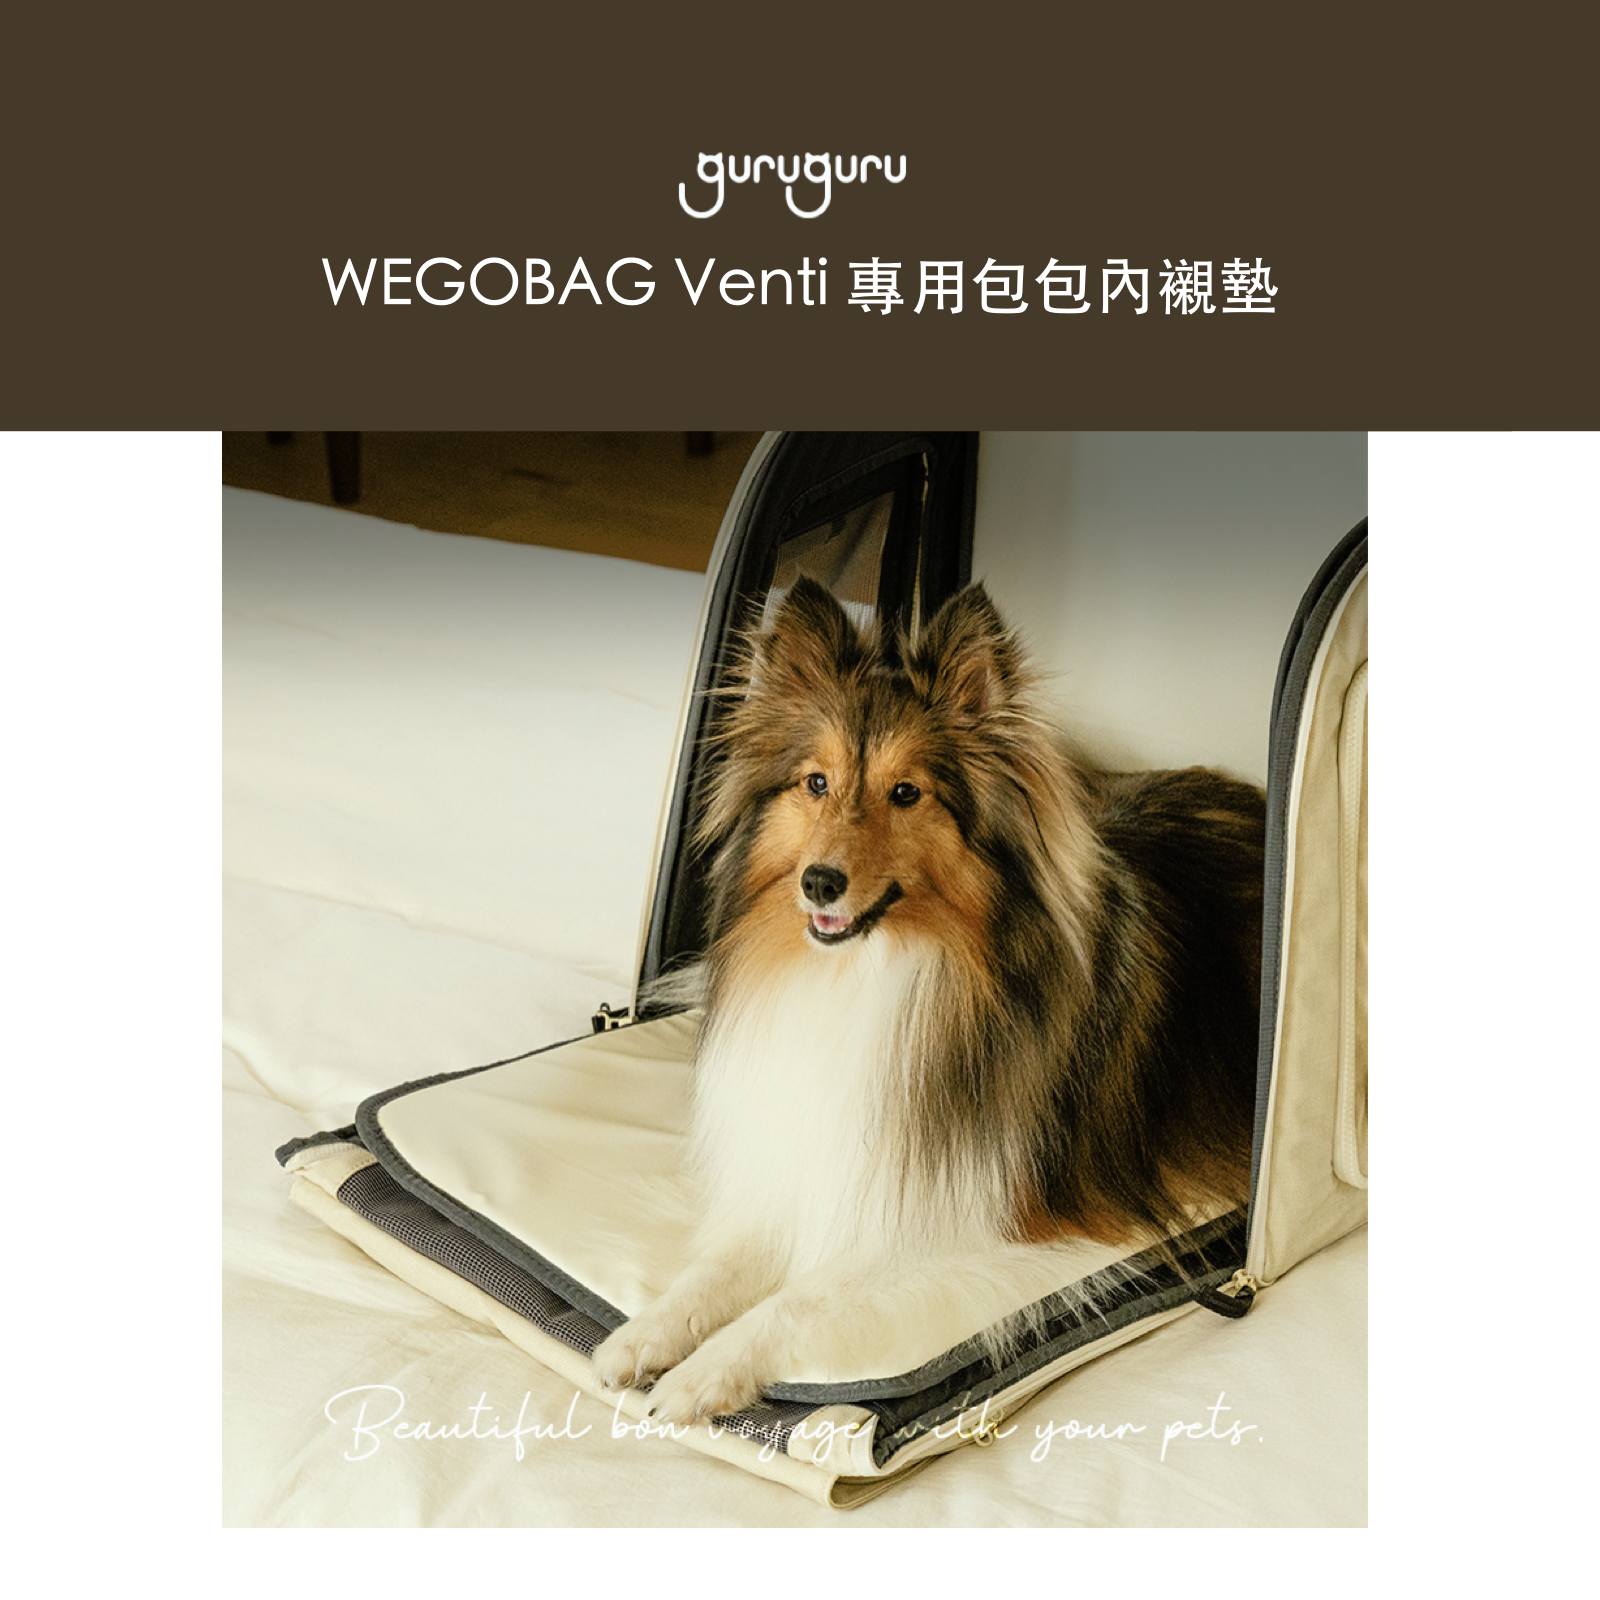 韓國 guruguru 寵物外出包 Wegobag 專用內襯墊｜Venti size 適用 - 高品質寵物背包 - 特價 $TWD 1280｜LOVE PET FAMILY